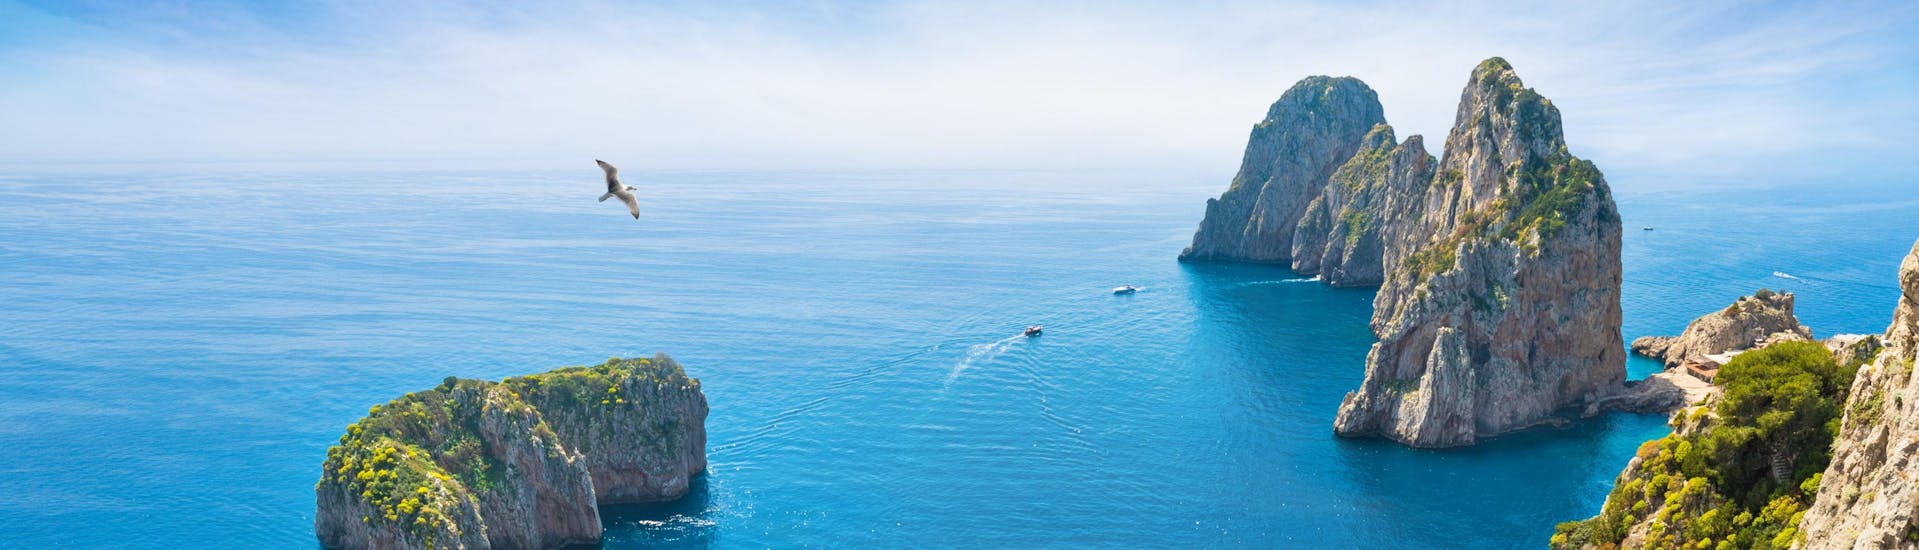 Eine Freundesgruppe macht eine Bootstour in der Urlaubsregion Capri.